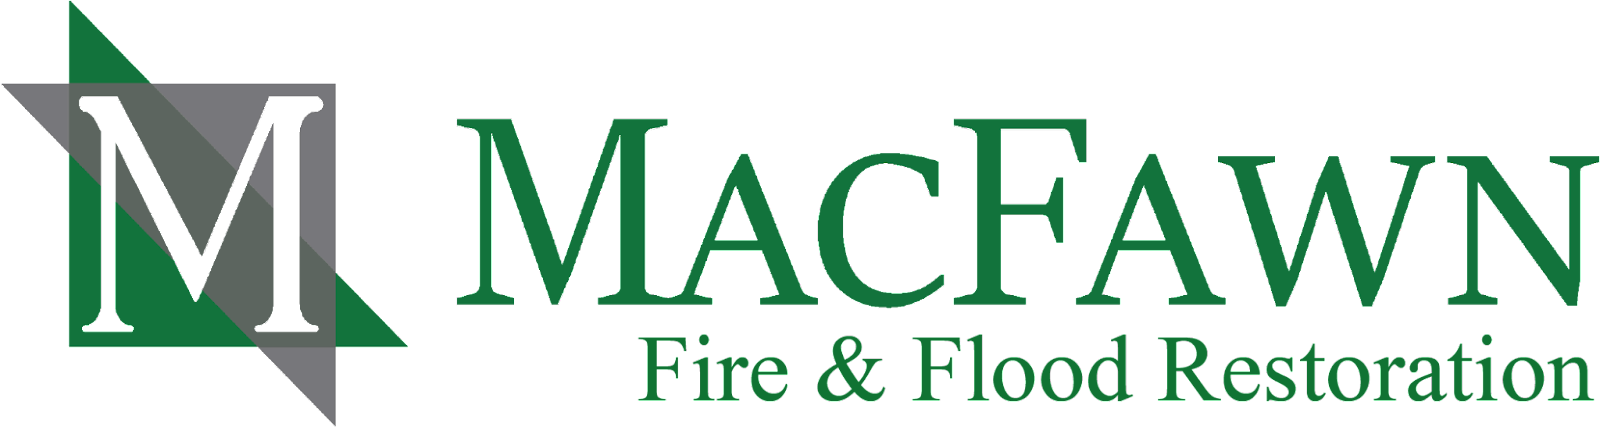 macfawn-logo